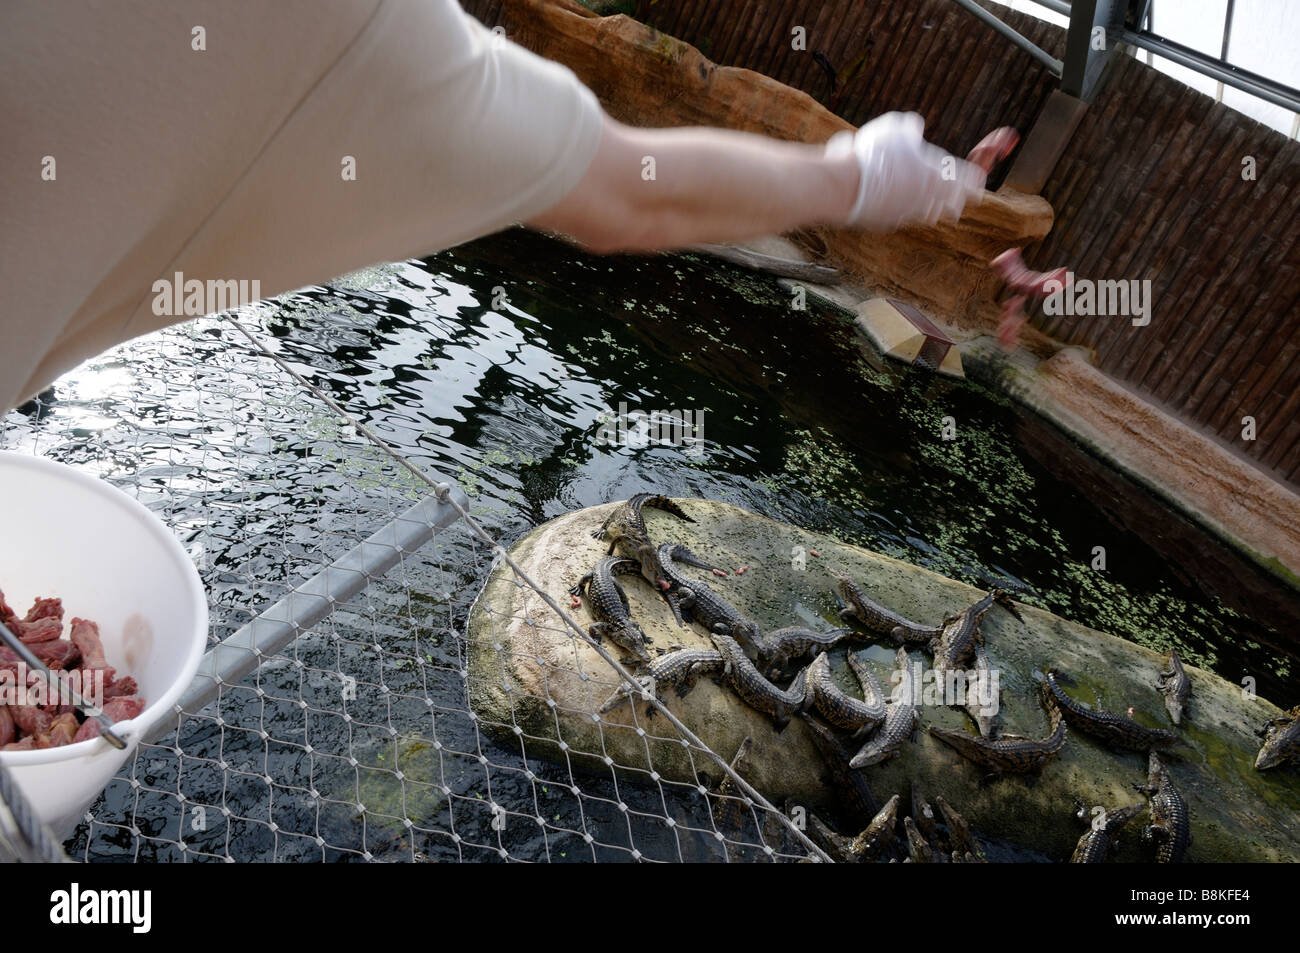 Stock photo of fedding time for the nile crocodiles in la planete des crocodiles in Civaux france Stock Photo